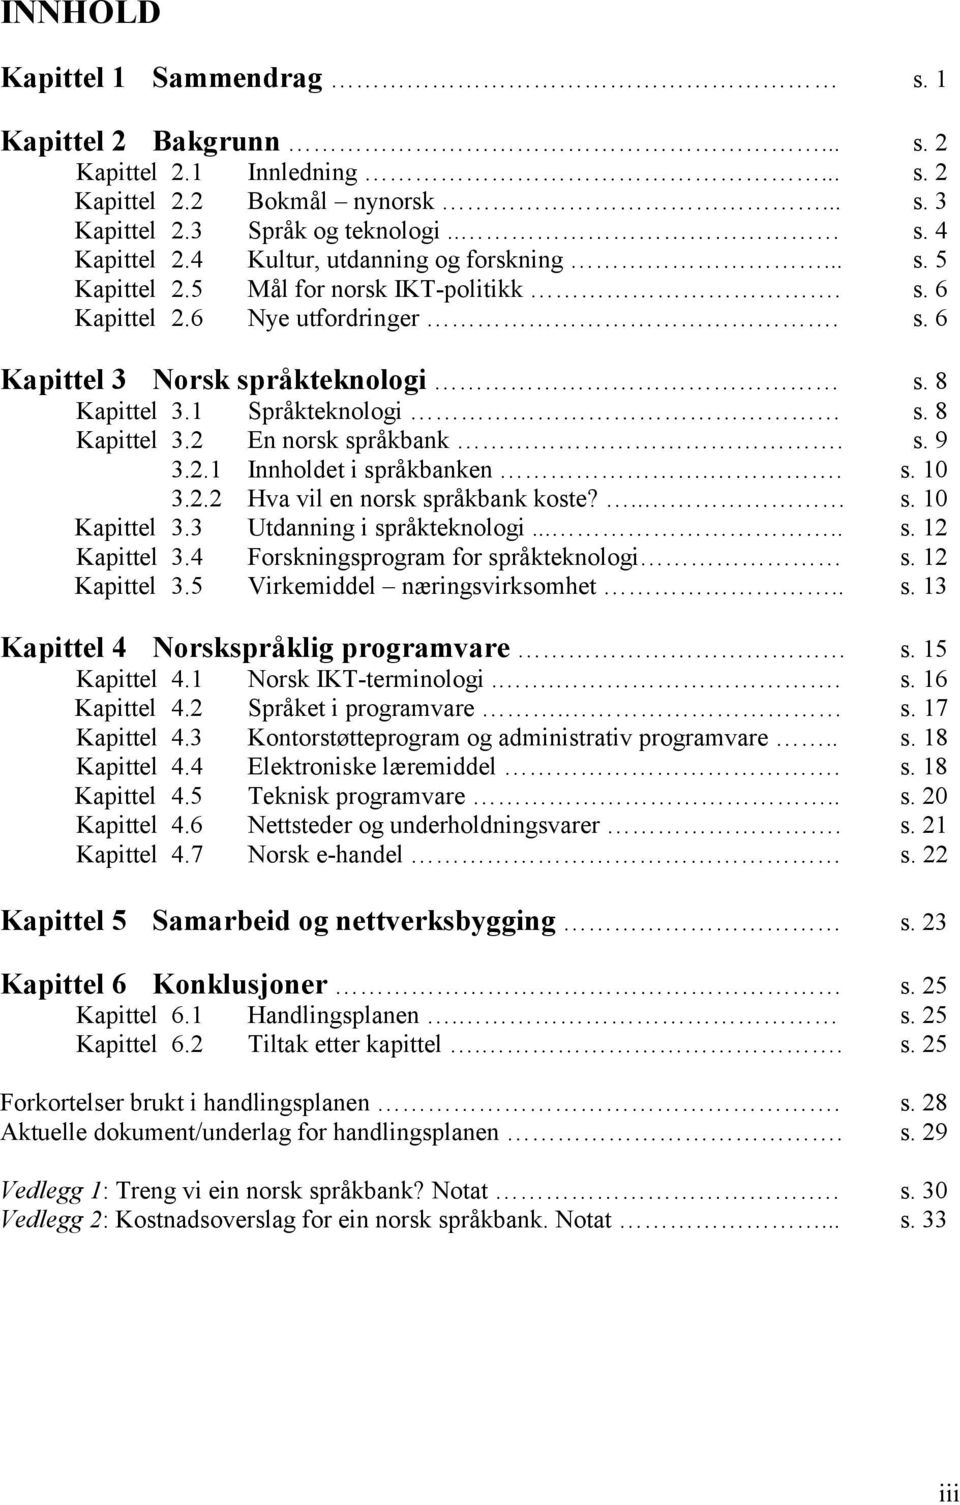 8 Kapittel 3.2 En norsk språkbank. s. 9 3.2.1 Innholdet i språkbanken.. s. 10 3.2.2 Hva vil en norsk språkbank koste?.. s. 10 Kapittel 3.3 Utdanning i språkteknologi..... s. 12 Kapittel 3.